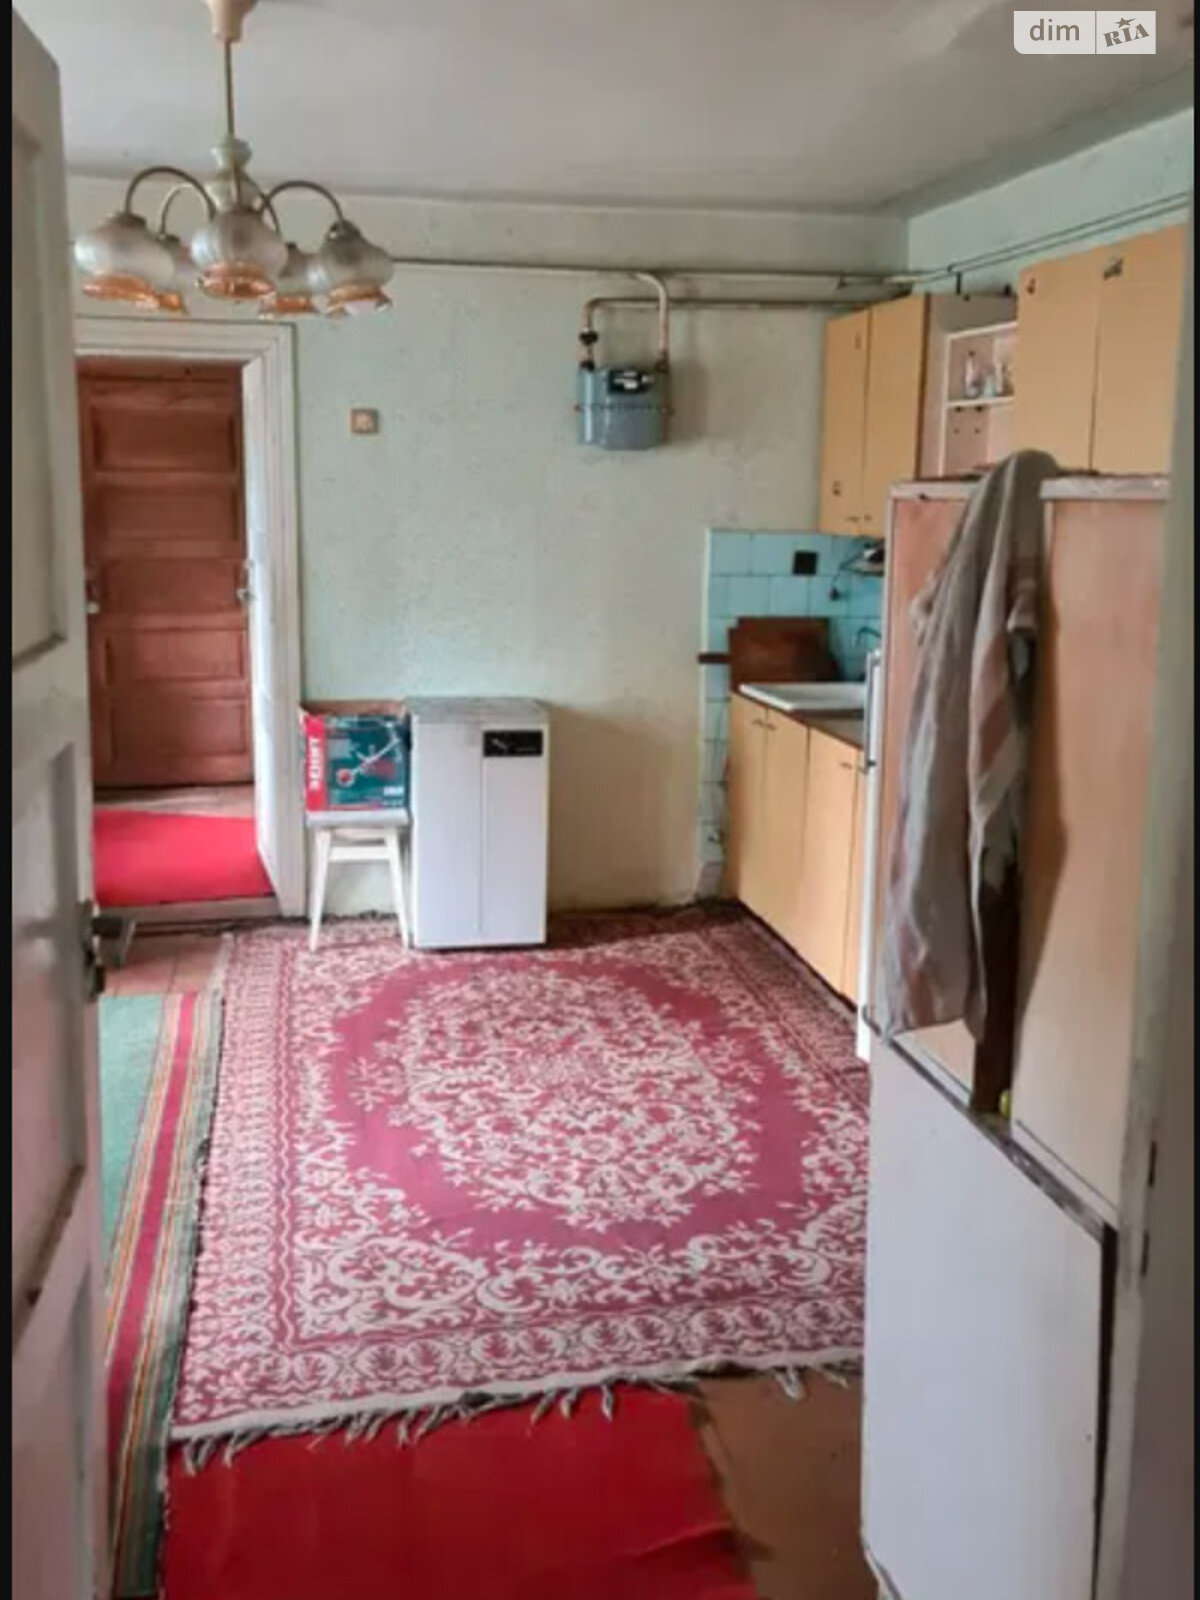 Продажа части дома в Дрогобыче, улица Мирослава Тураша, 2 комнаты фото 1